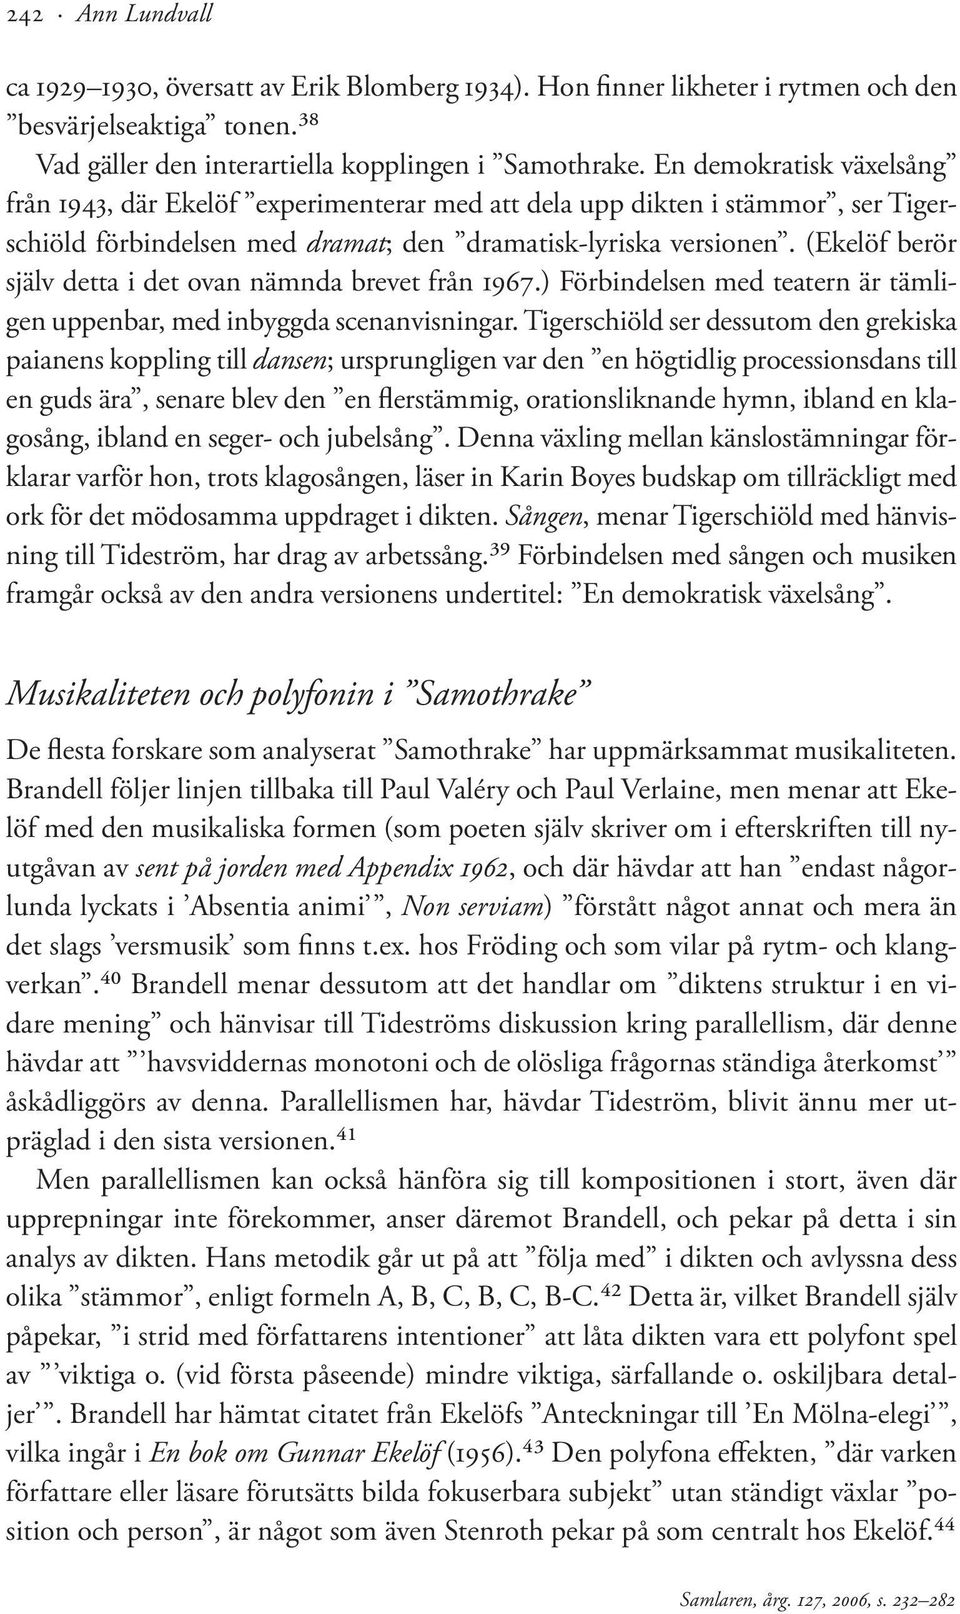 Samlaren. Tidskrift för svensk litteraturvetenskaplig forskning ...